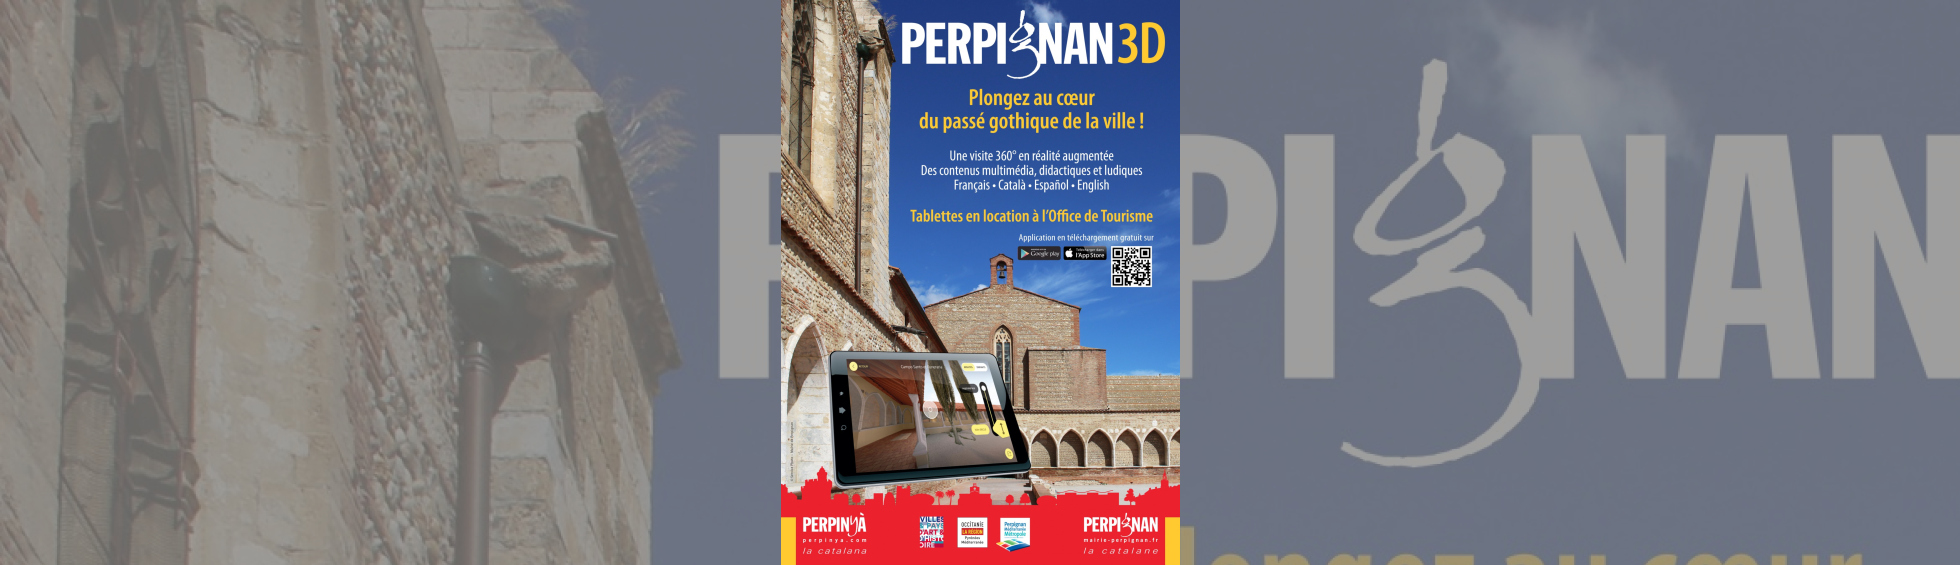 Affiche Perpignan 3D 2016